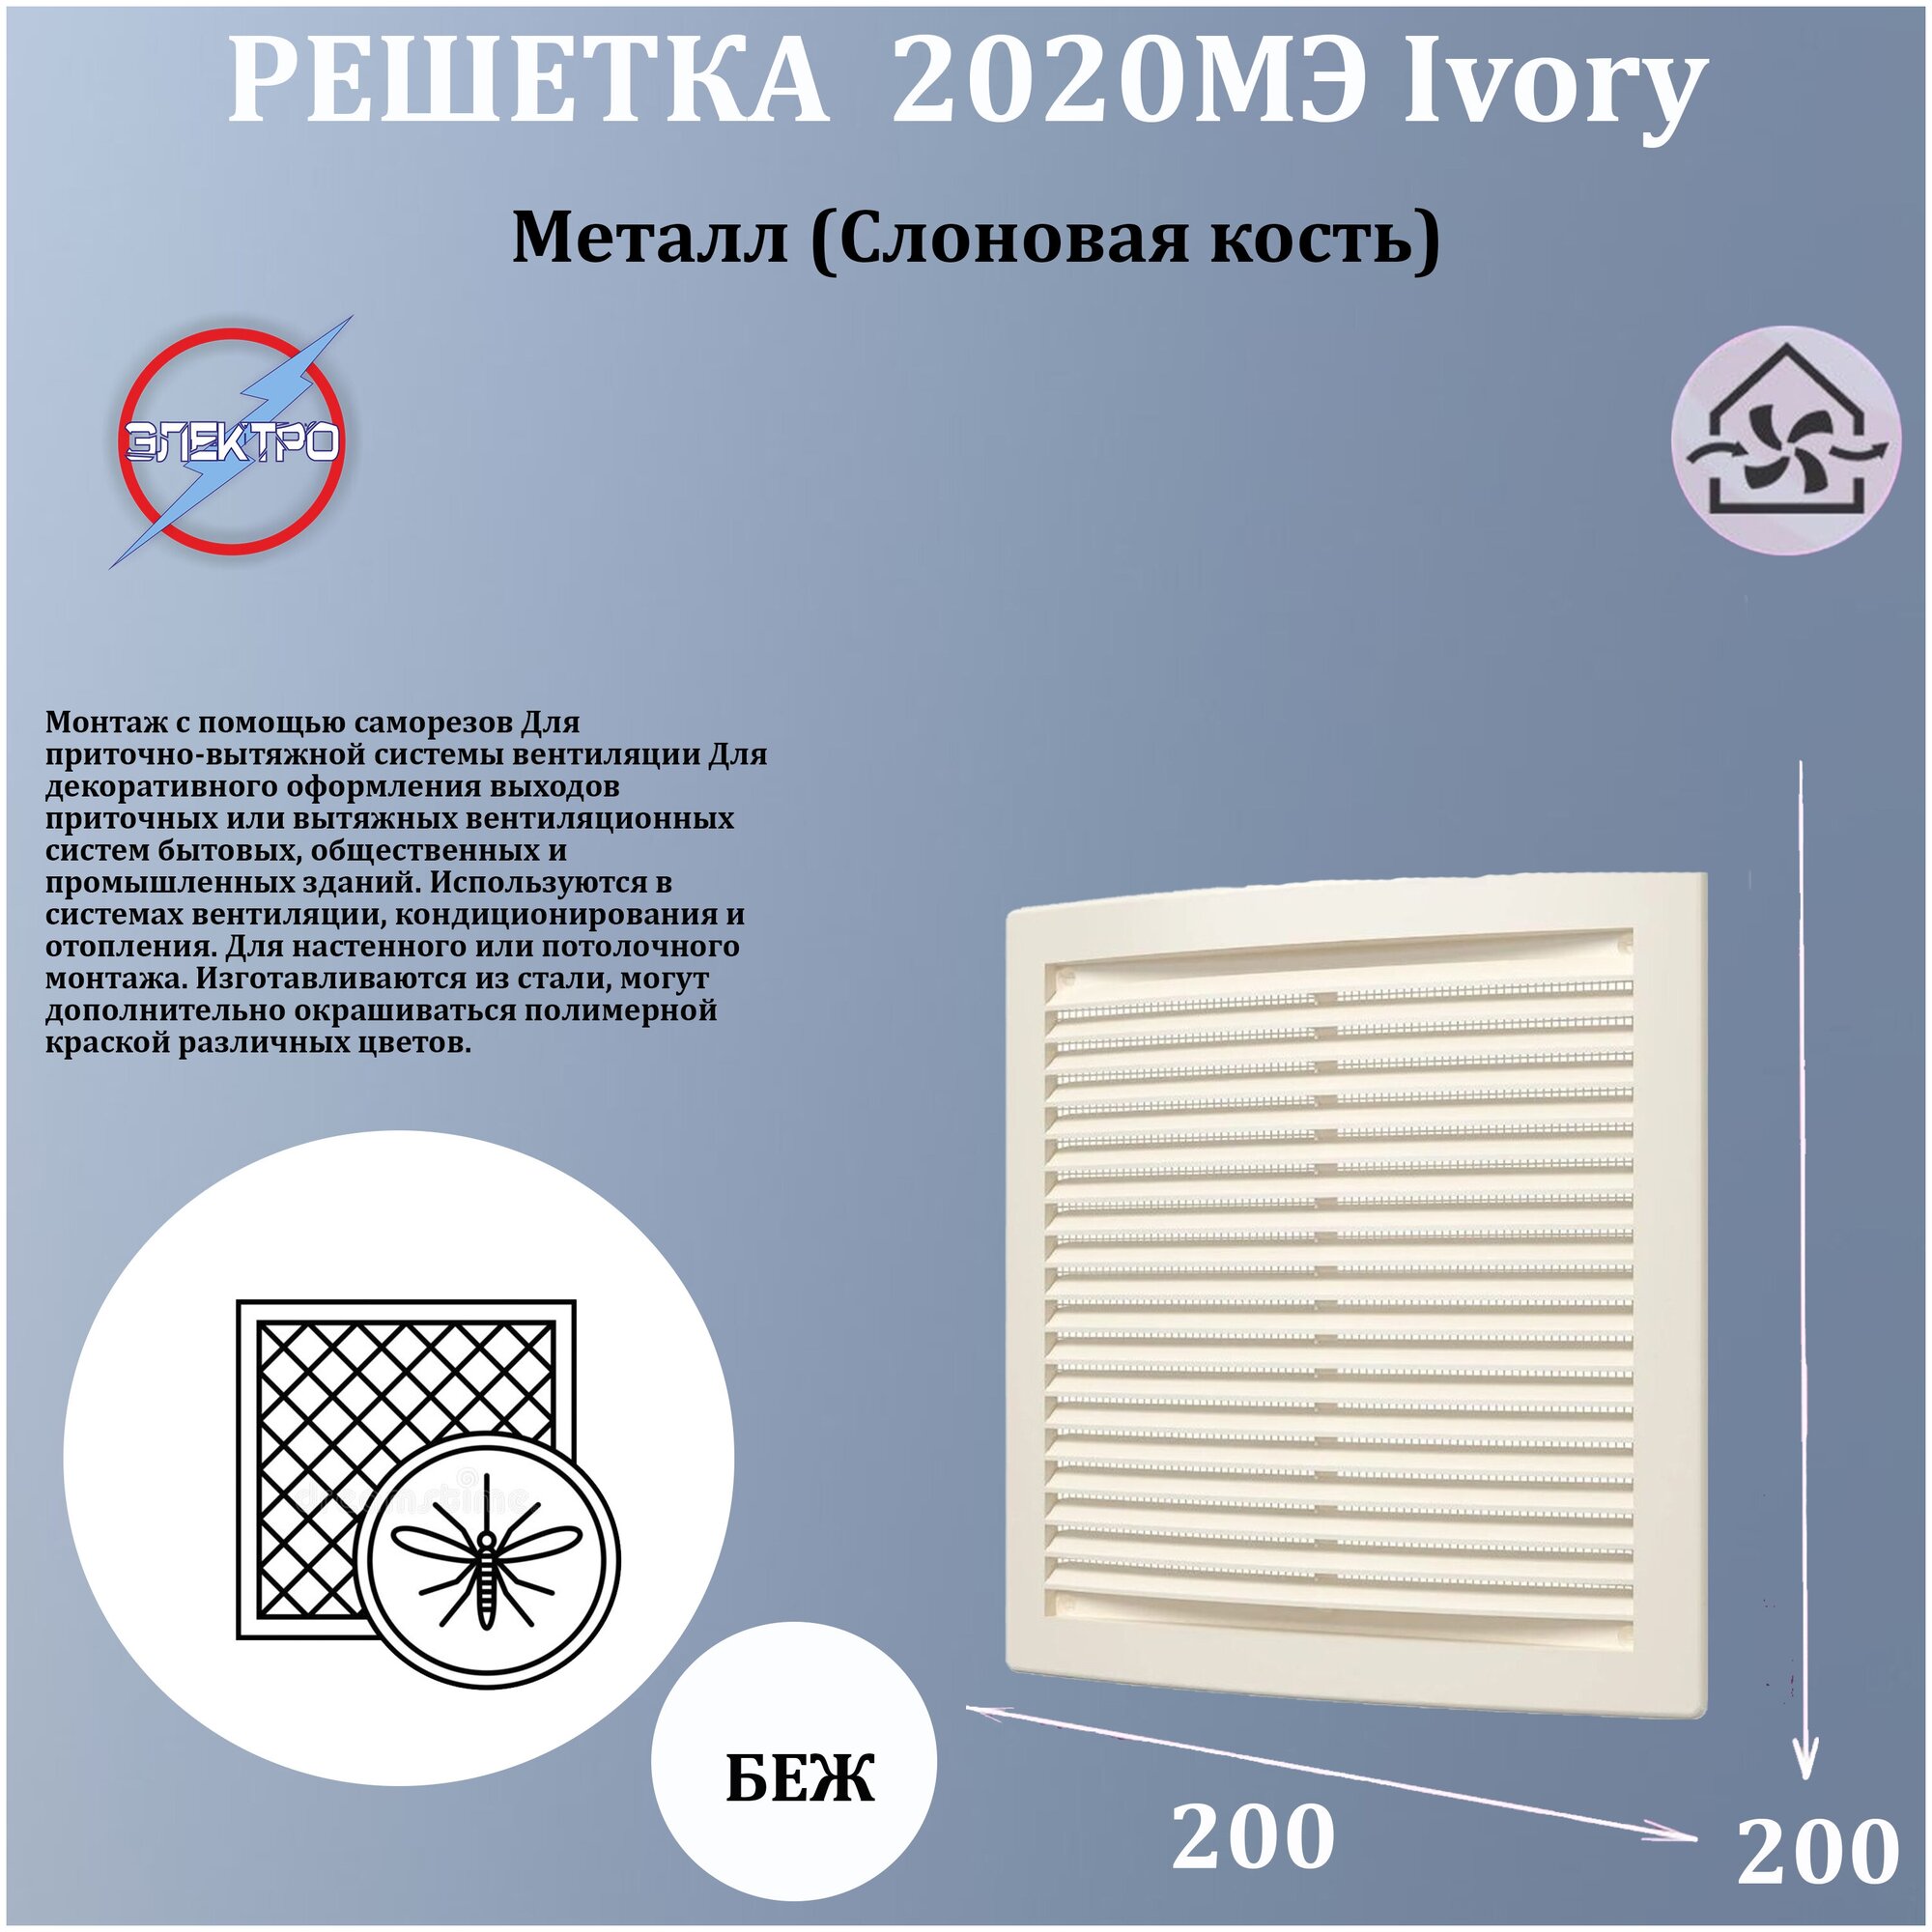 2020МЭ Ivory Решетка вентиляционная 200x200 мм (стальная) ERA - фото №1